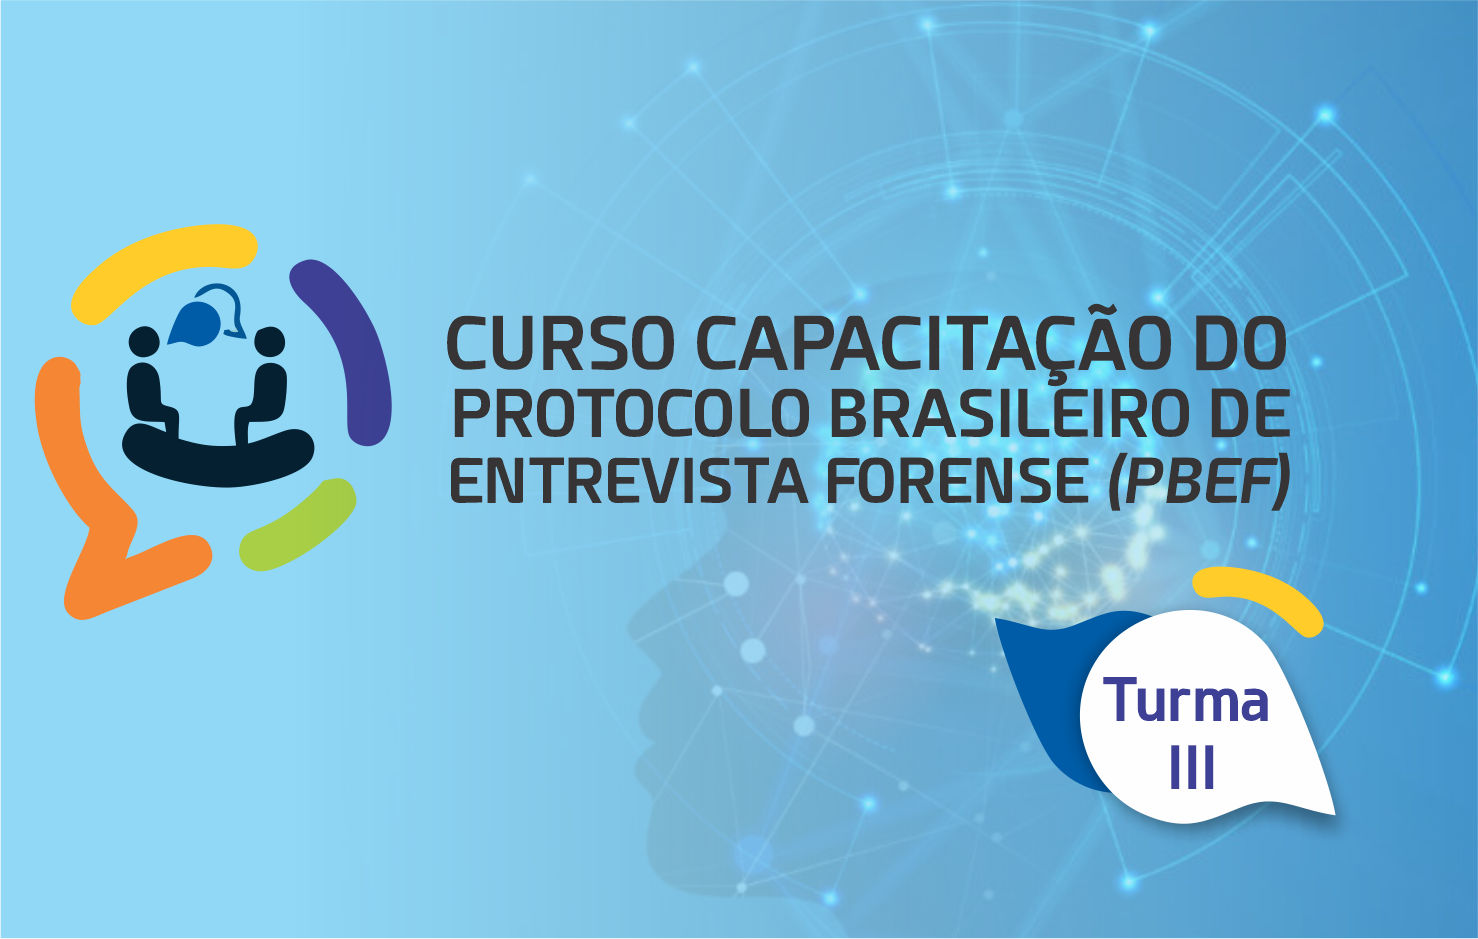 Capacitação do Protocolo Brasileiro de Entrevista Forense (PBEF) – TURMA III